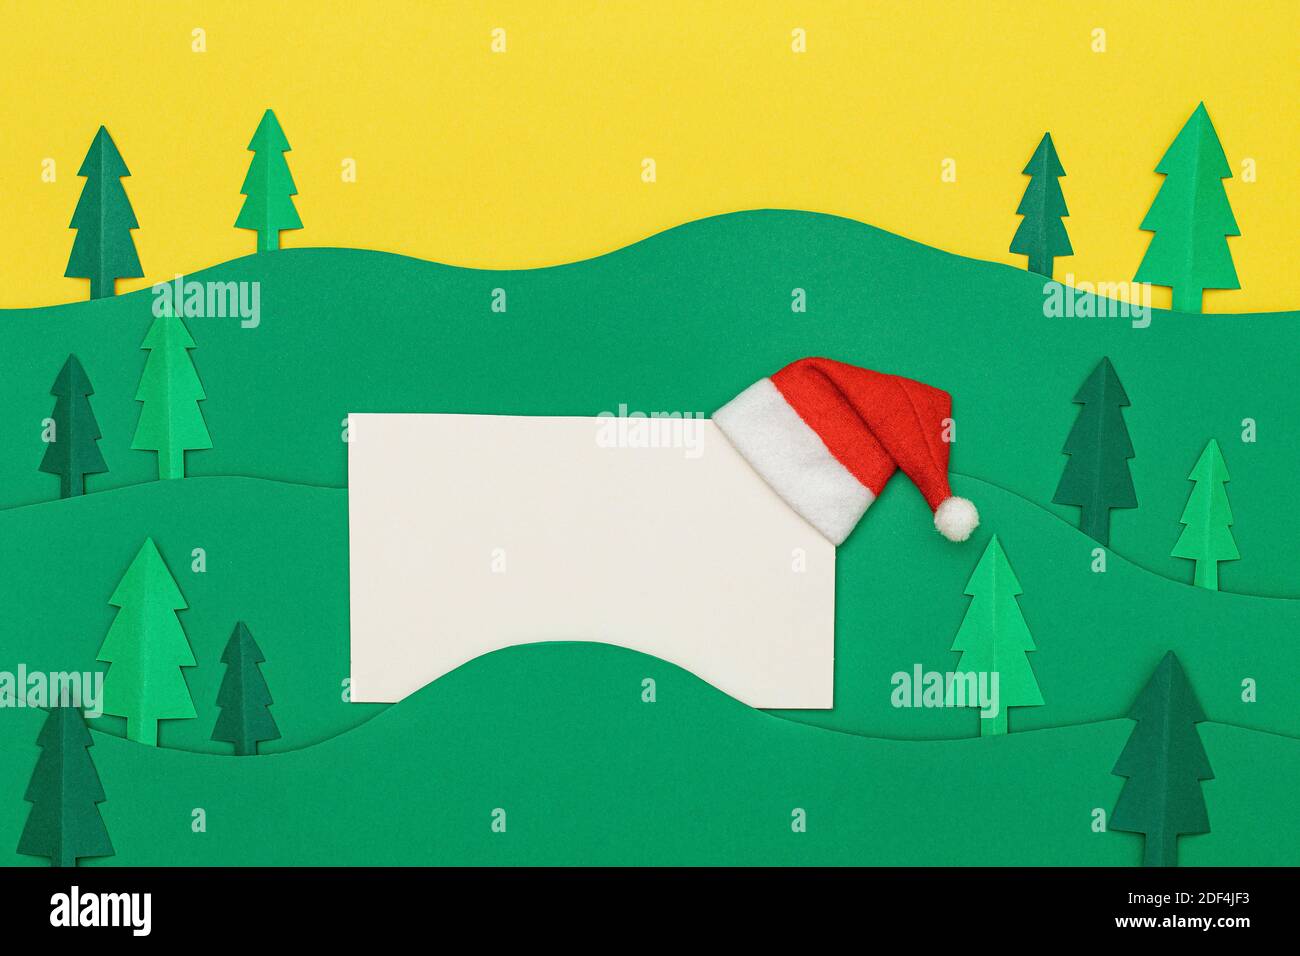 Weihnachtsbaum Papier schneiden Design papercraft Karte mit Weihnachtsmann Hut. Papiergeschnittene Weihnachtsbäume. Kreative Gestaltung von weihnachten Hintergrund mit pape Stockfoto